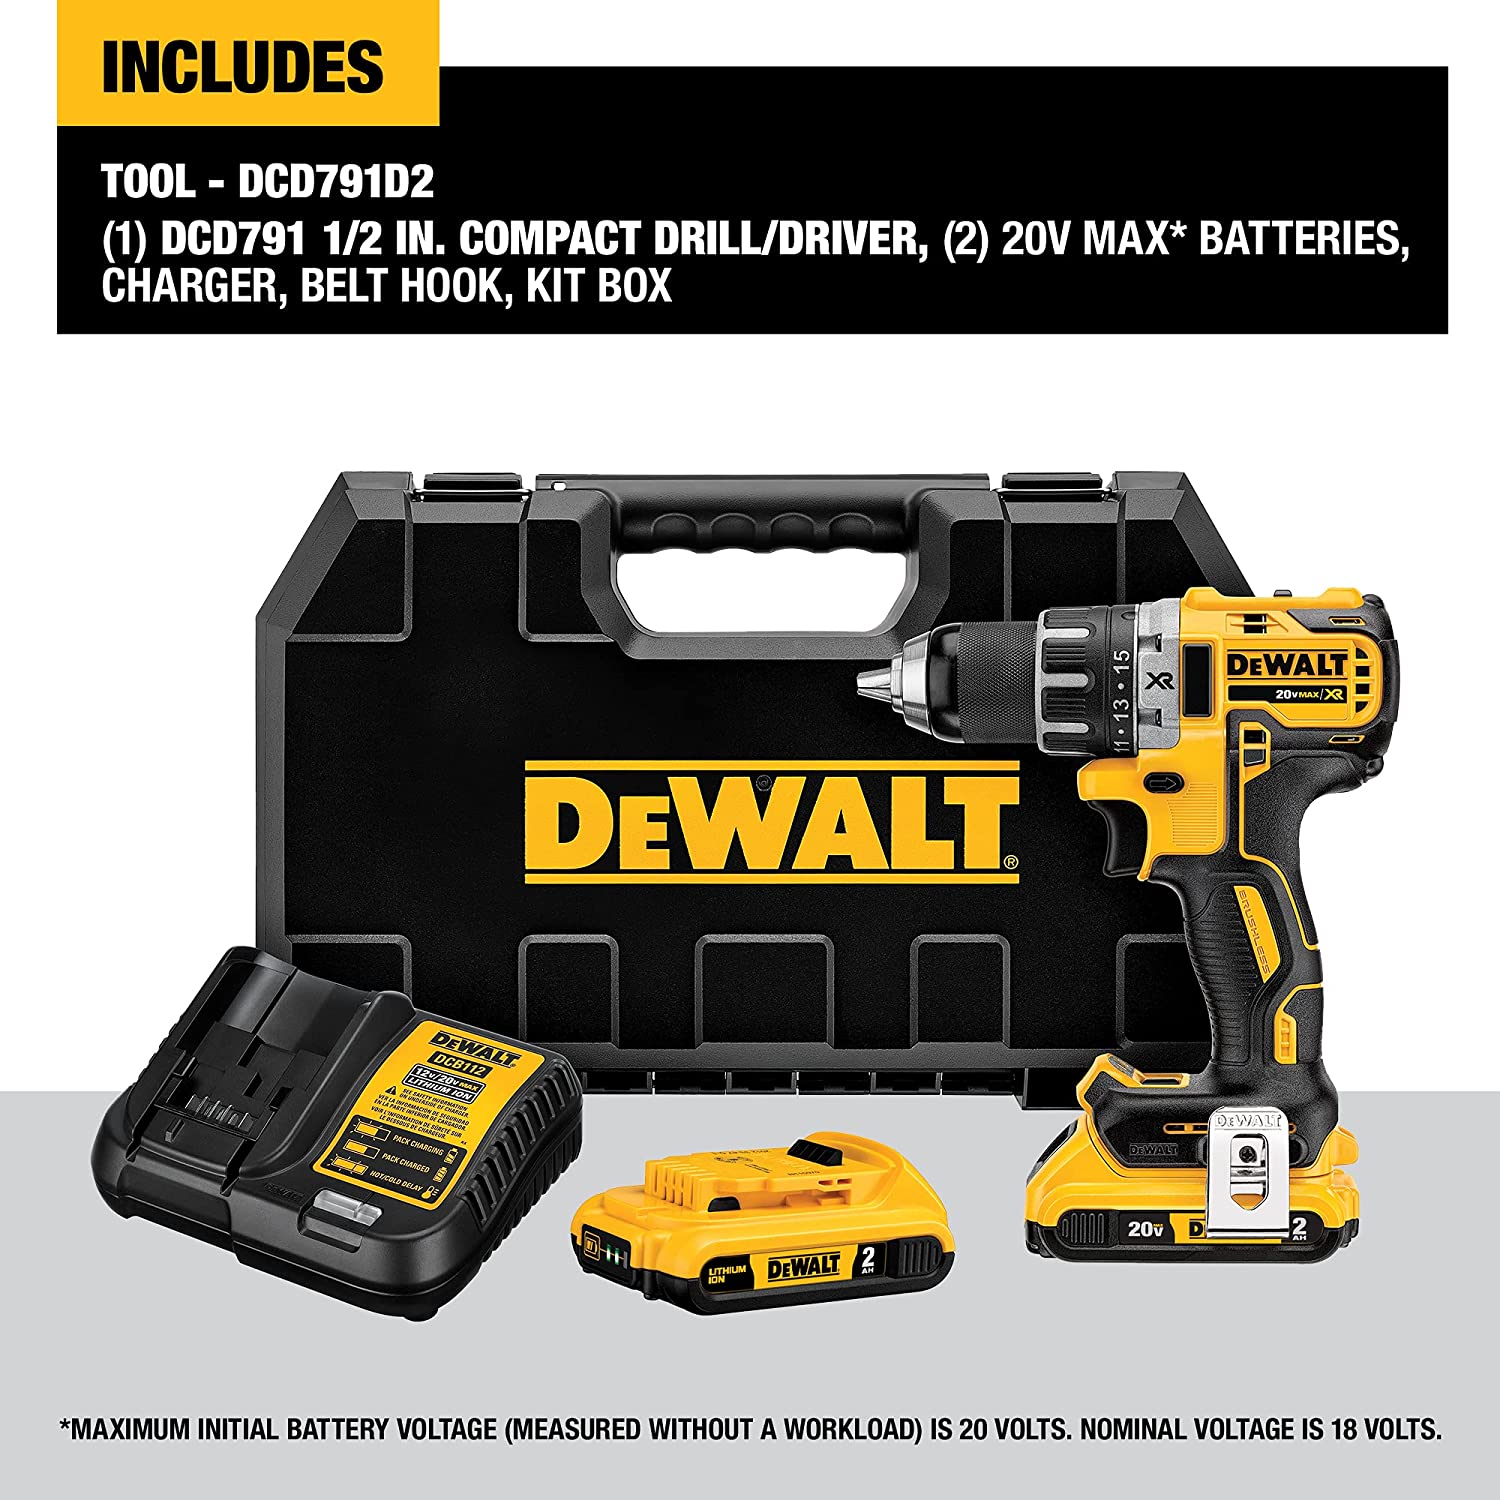 Dewalt - DCD791D2 - Cordless Drill / Driver Kit - 20V MAX - 1/2